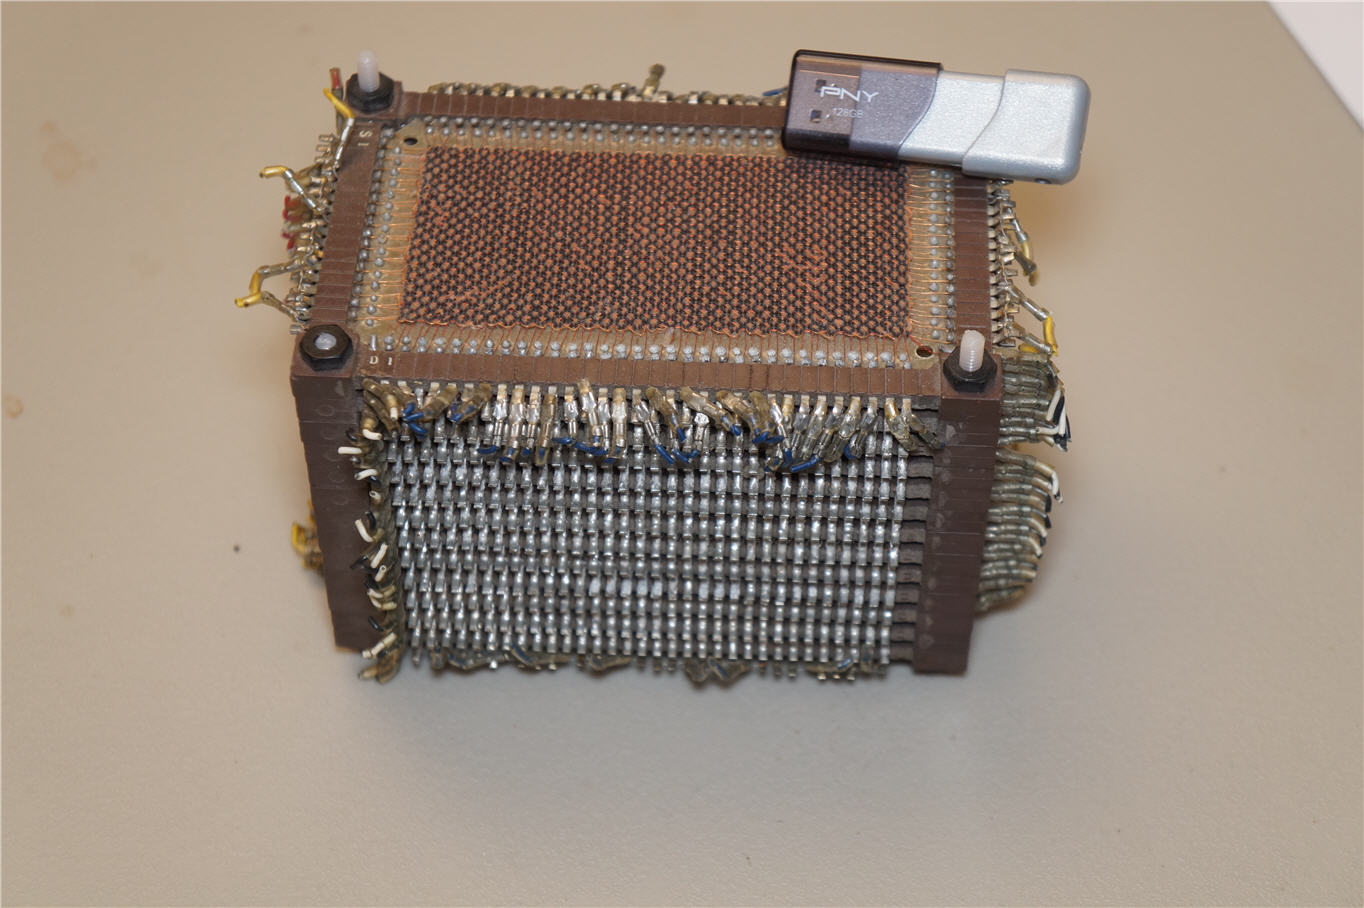 A core memory module - 13k bits